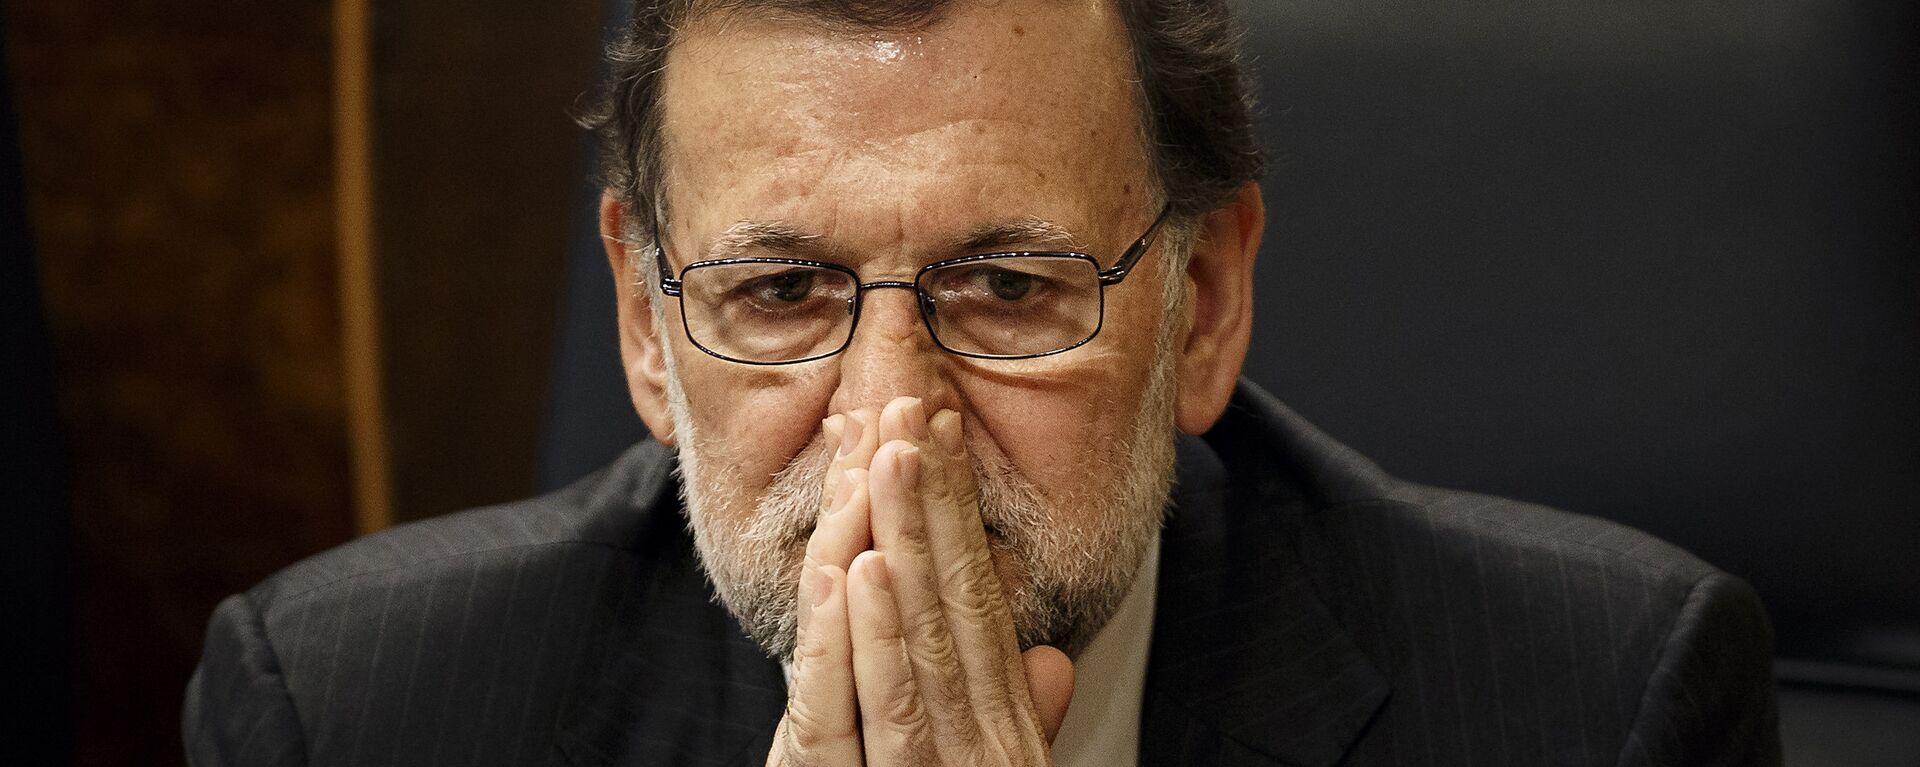 Mariano Rajoy, expresidente del Gobierno de España - Sputnik Mundo, 1920, 02.07.2021